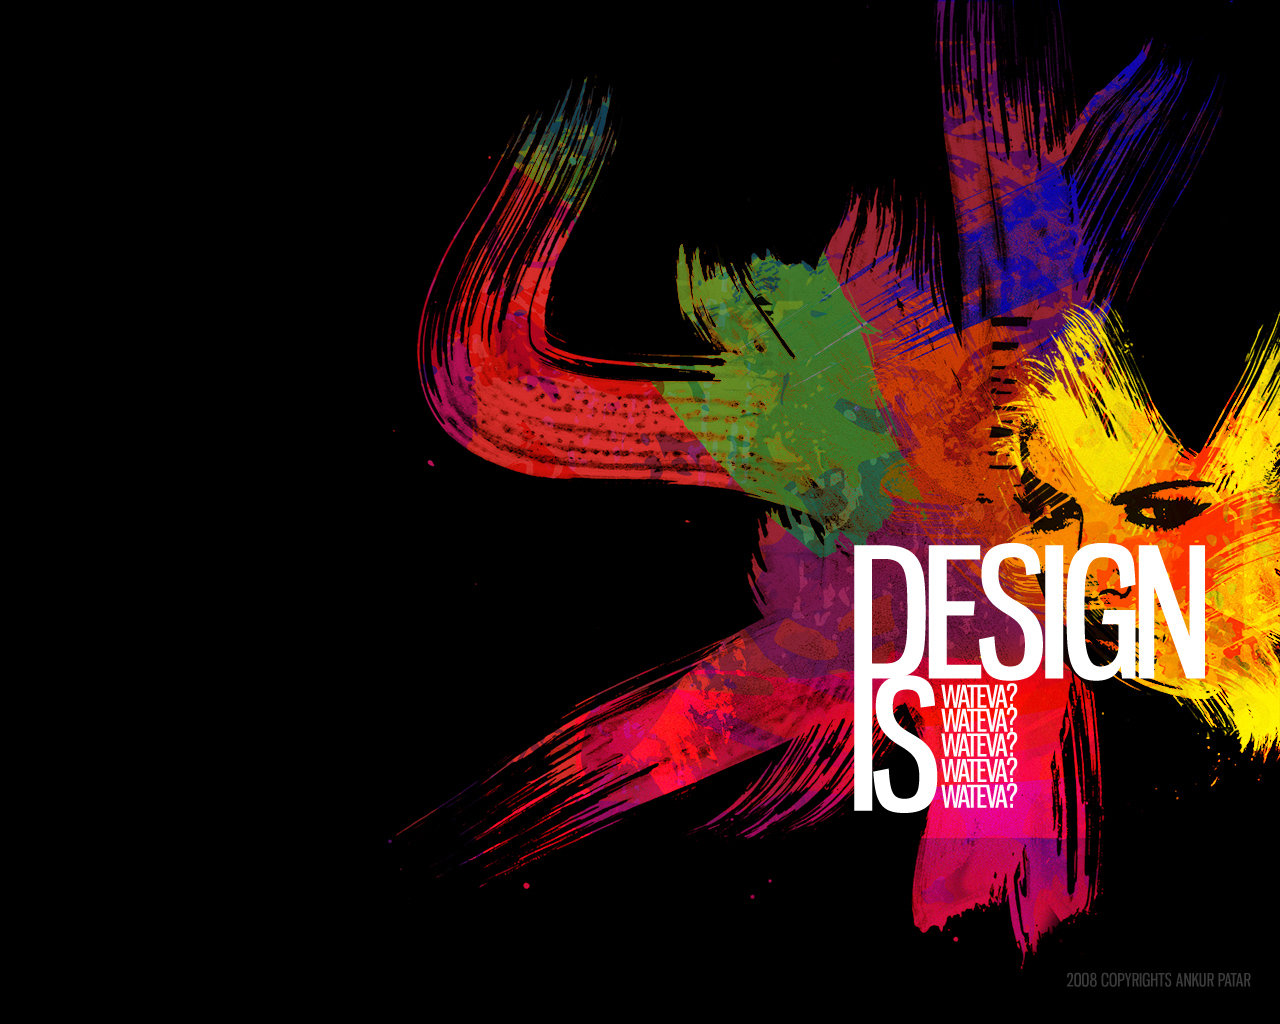 49+] Graphic Design Wallpapers - WallpaperSafari